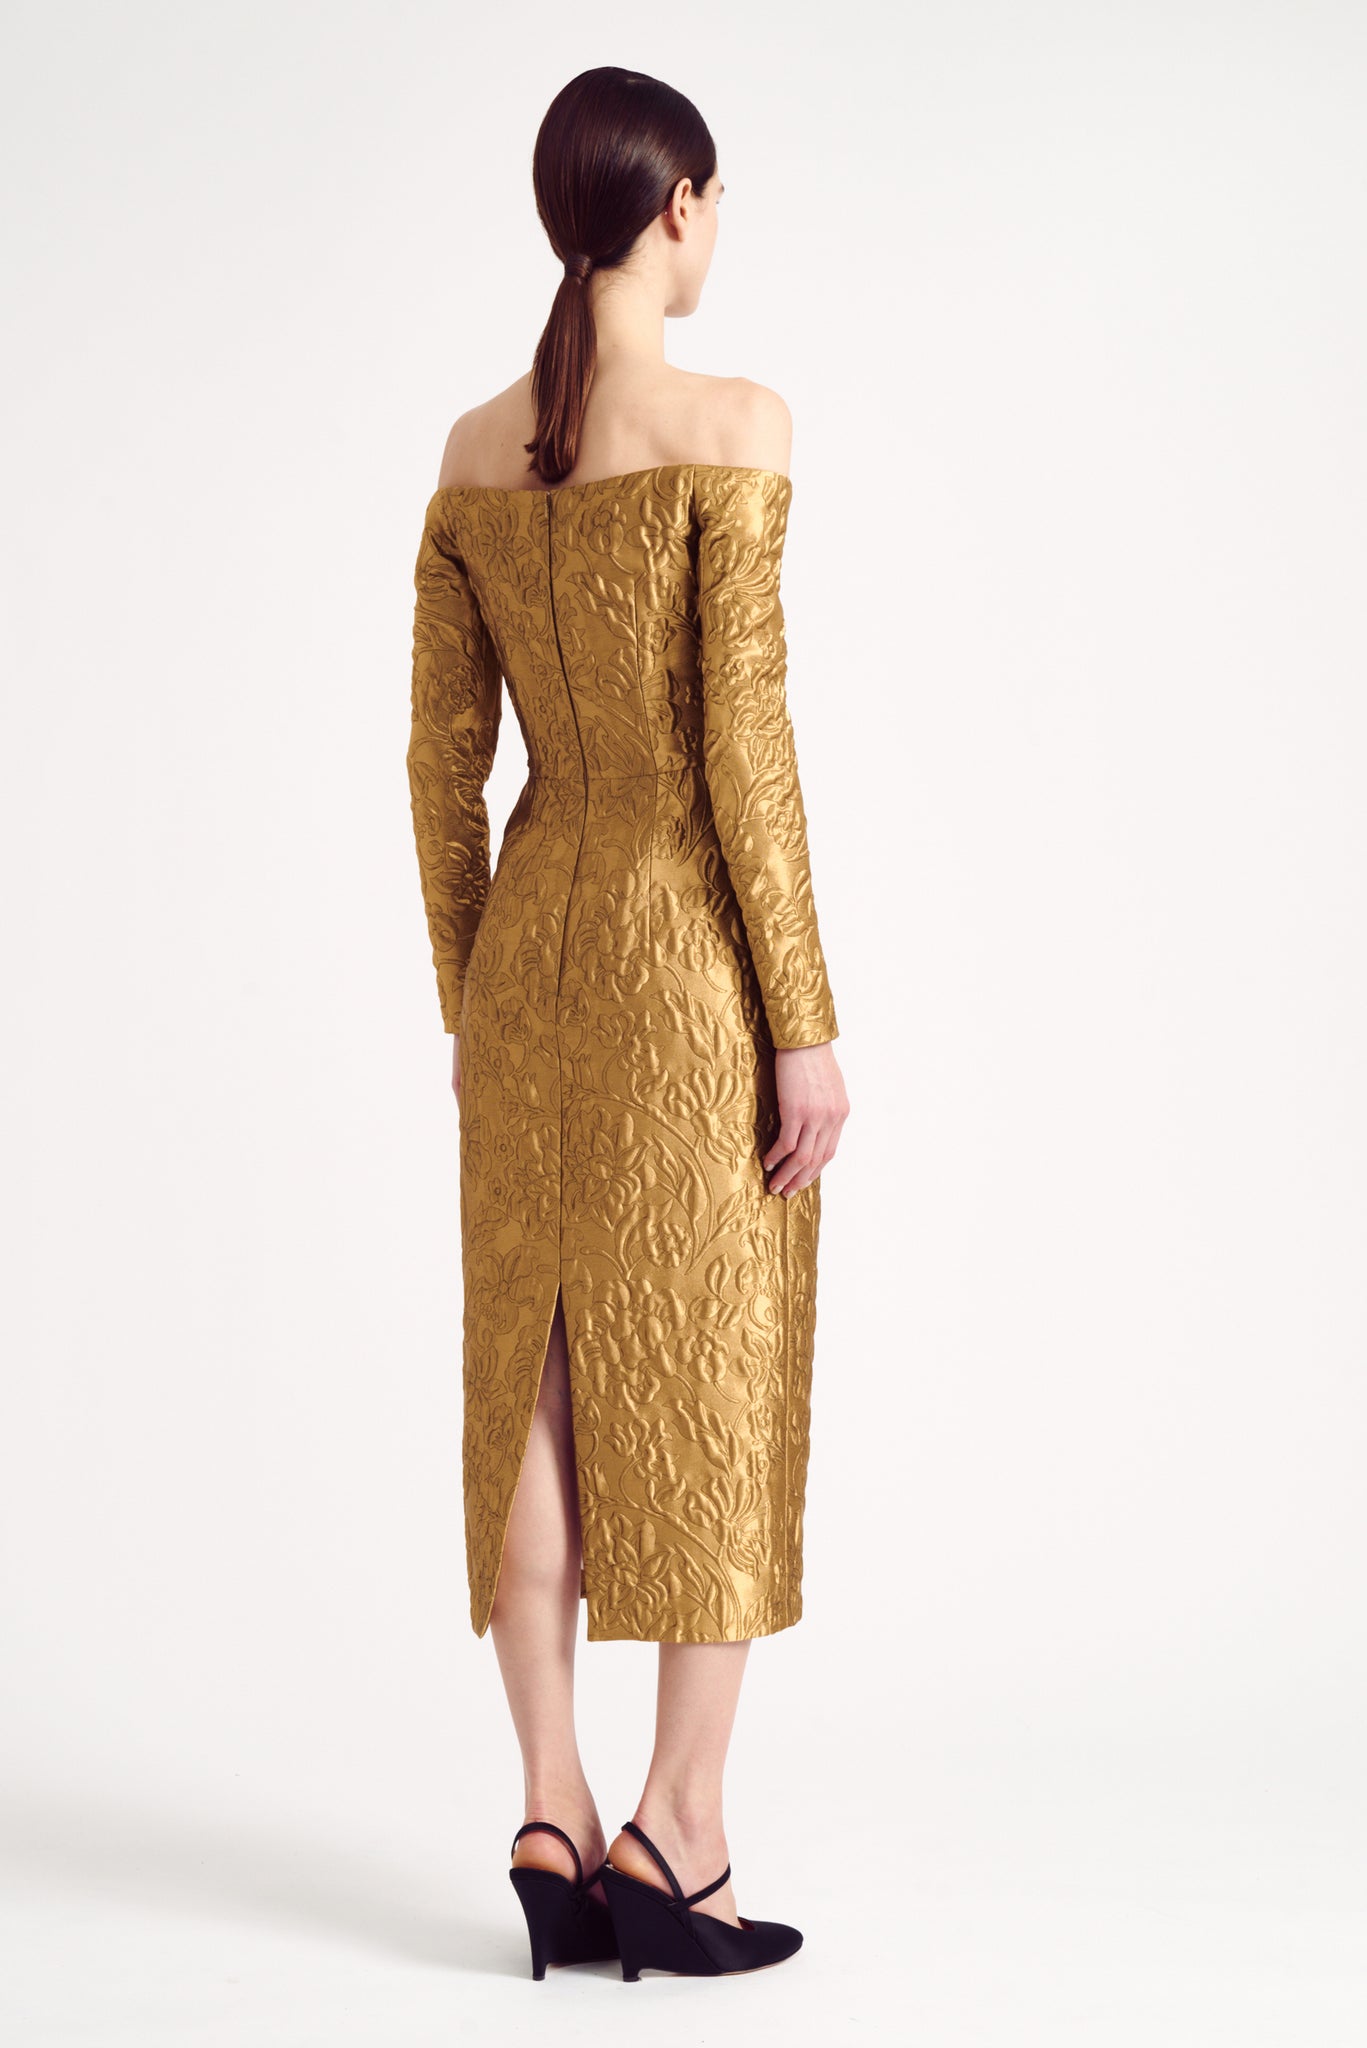 Burleigh Dress in Gold Lurex Metallic Jacquard | Emilia Wickstead